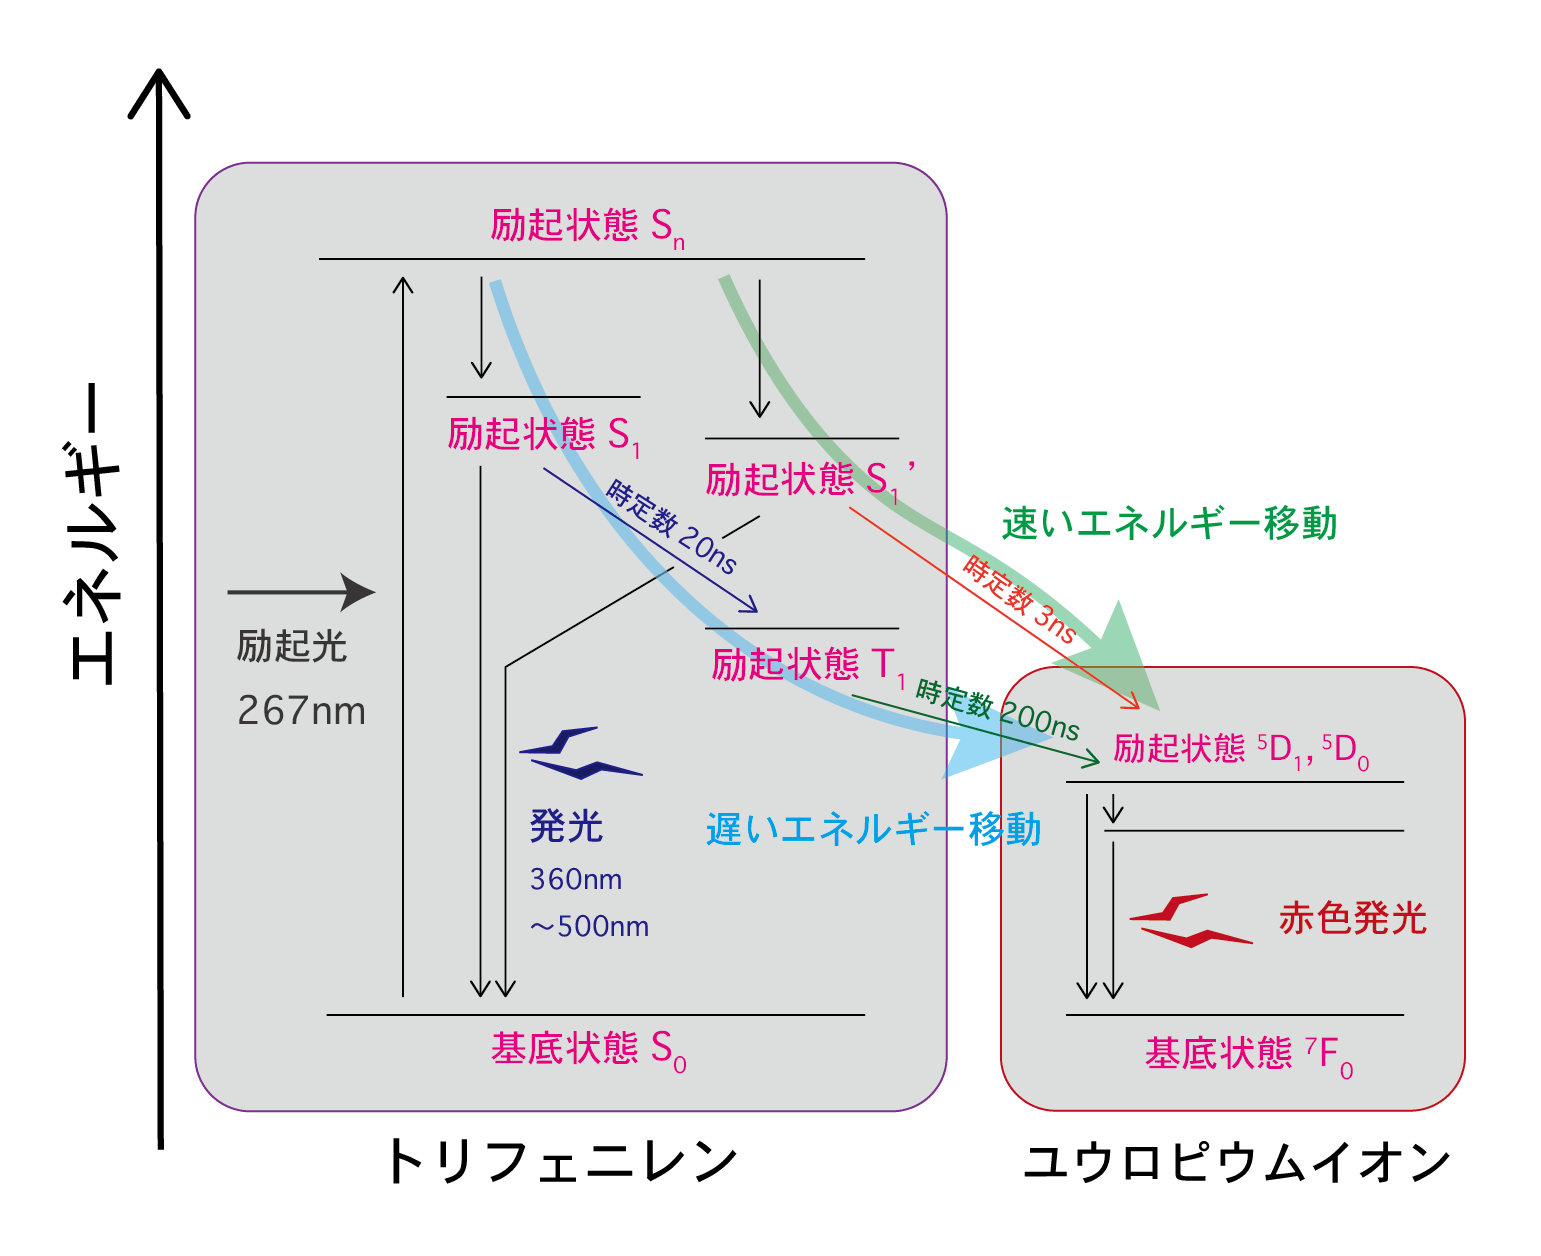 <dfn class="fig">図6</dfn>：<span class="qrinews-figure-title">Eu(hfa)<sub>3</sub>(DPPTO)<sub>2</sub>のエネルギー移動を表す<a href="#foot6" title="励起状態にはたくさんの種類が存在し、光を吸収して励起状態から基底状態へ戻る途中で、いくつかの他の励起状態を経由します。その経路を図示したものをヤブロンスキー図といいます。">ヤブロンスキー図<sup>[6]</sup></a></span>　基底状態の Eu(hfa)<sub>3</sub>(DPPTO)<sub>2</sub> に 267 nm の励起光を照射すると、トリフェニレンがエネルギーを受け取り、S<sub>n</sub> という励起状態になる。そこから、励起状態 S<sub>1</sub> と励起状態 S<sub>1</sub>&rsquo; のどちらかへ光を放出せずに状態遷移する。この S<sub>1</sub> と S<sub>1</sub>&rsquo; から基底状態への遷移によって、トリフェニレンの発光が起こる。一方で、錯体分子によってはユウロピウムイオンへエネルギーを渡すものもある。このとき、S<sub>1</sub> の状態の錯体がエネルギーを渡すのと、S<sub>1</sub>&rsquo; の状態の錯体がエネルギーを渡すのでは、エネルギー輸送の速さが異なる。私たちが実験などで扱う試料には、非常に多くの分子が含まれており、様々な経路をたどる分子が混ざった状態が観察されていることに注意。